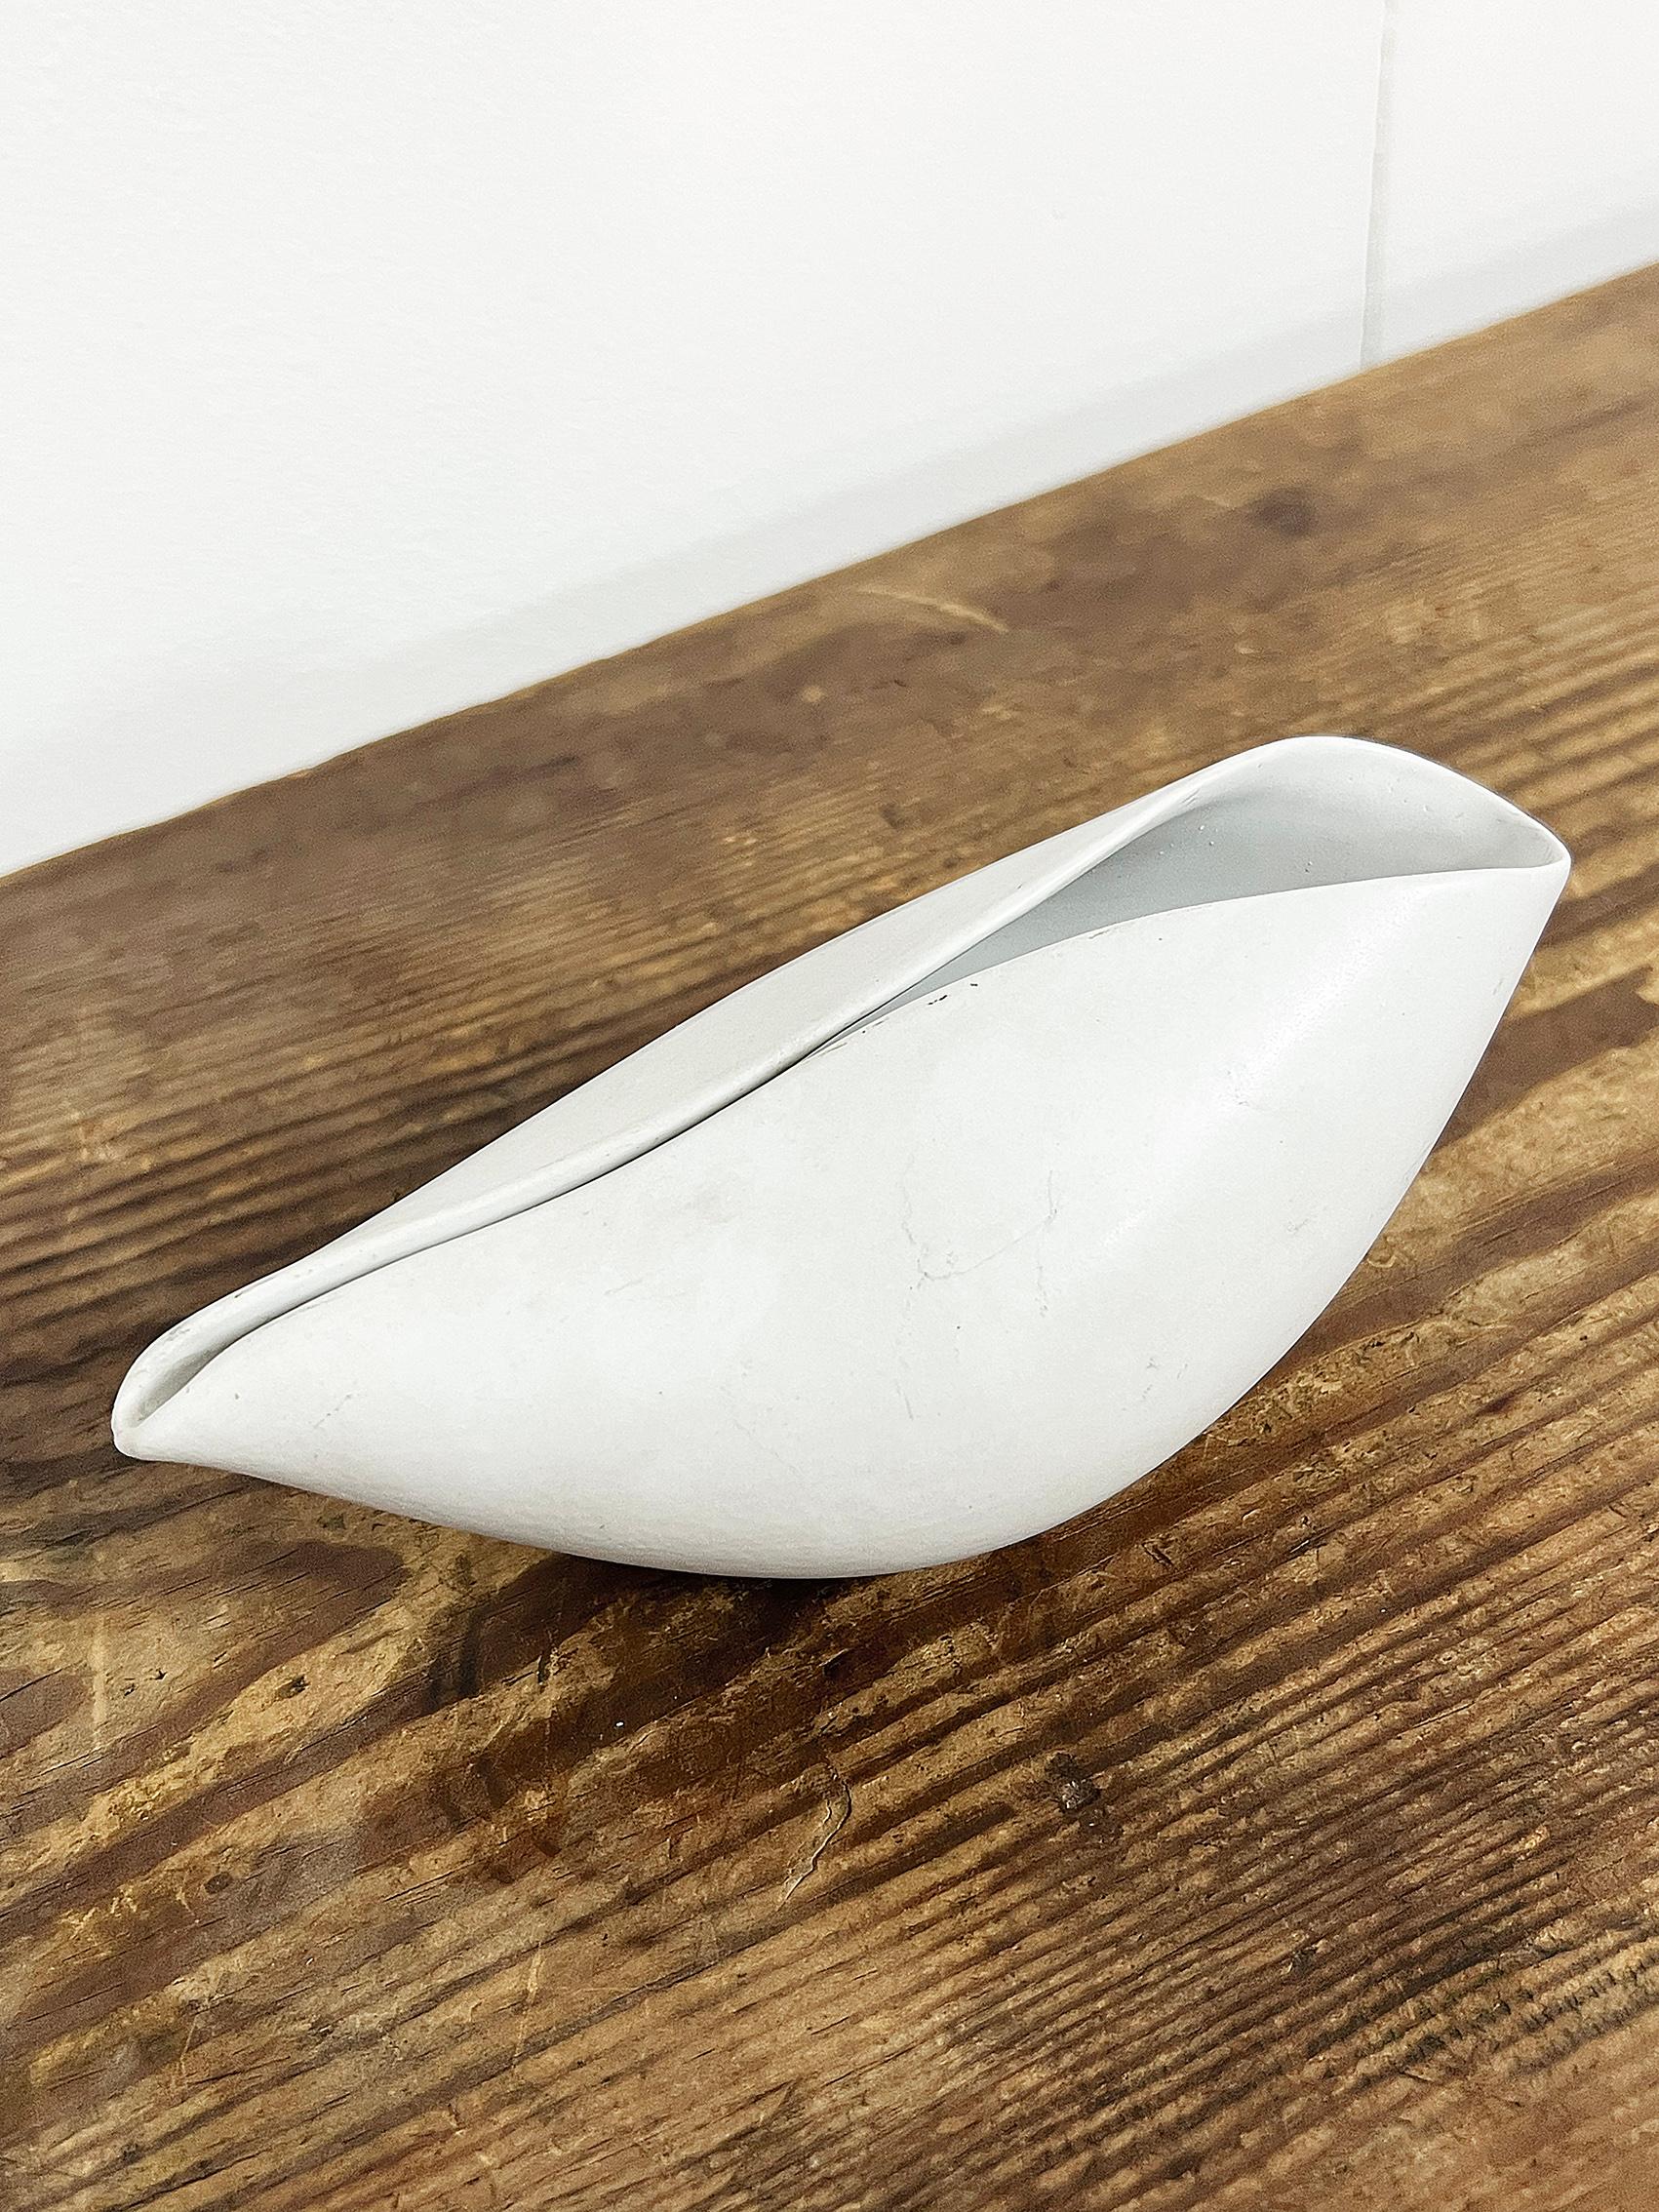 Scandinavian Modern “Veckla” Bowl by Stig Lindberg for Gustavsberg 1950's For Sale